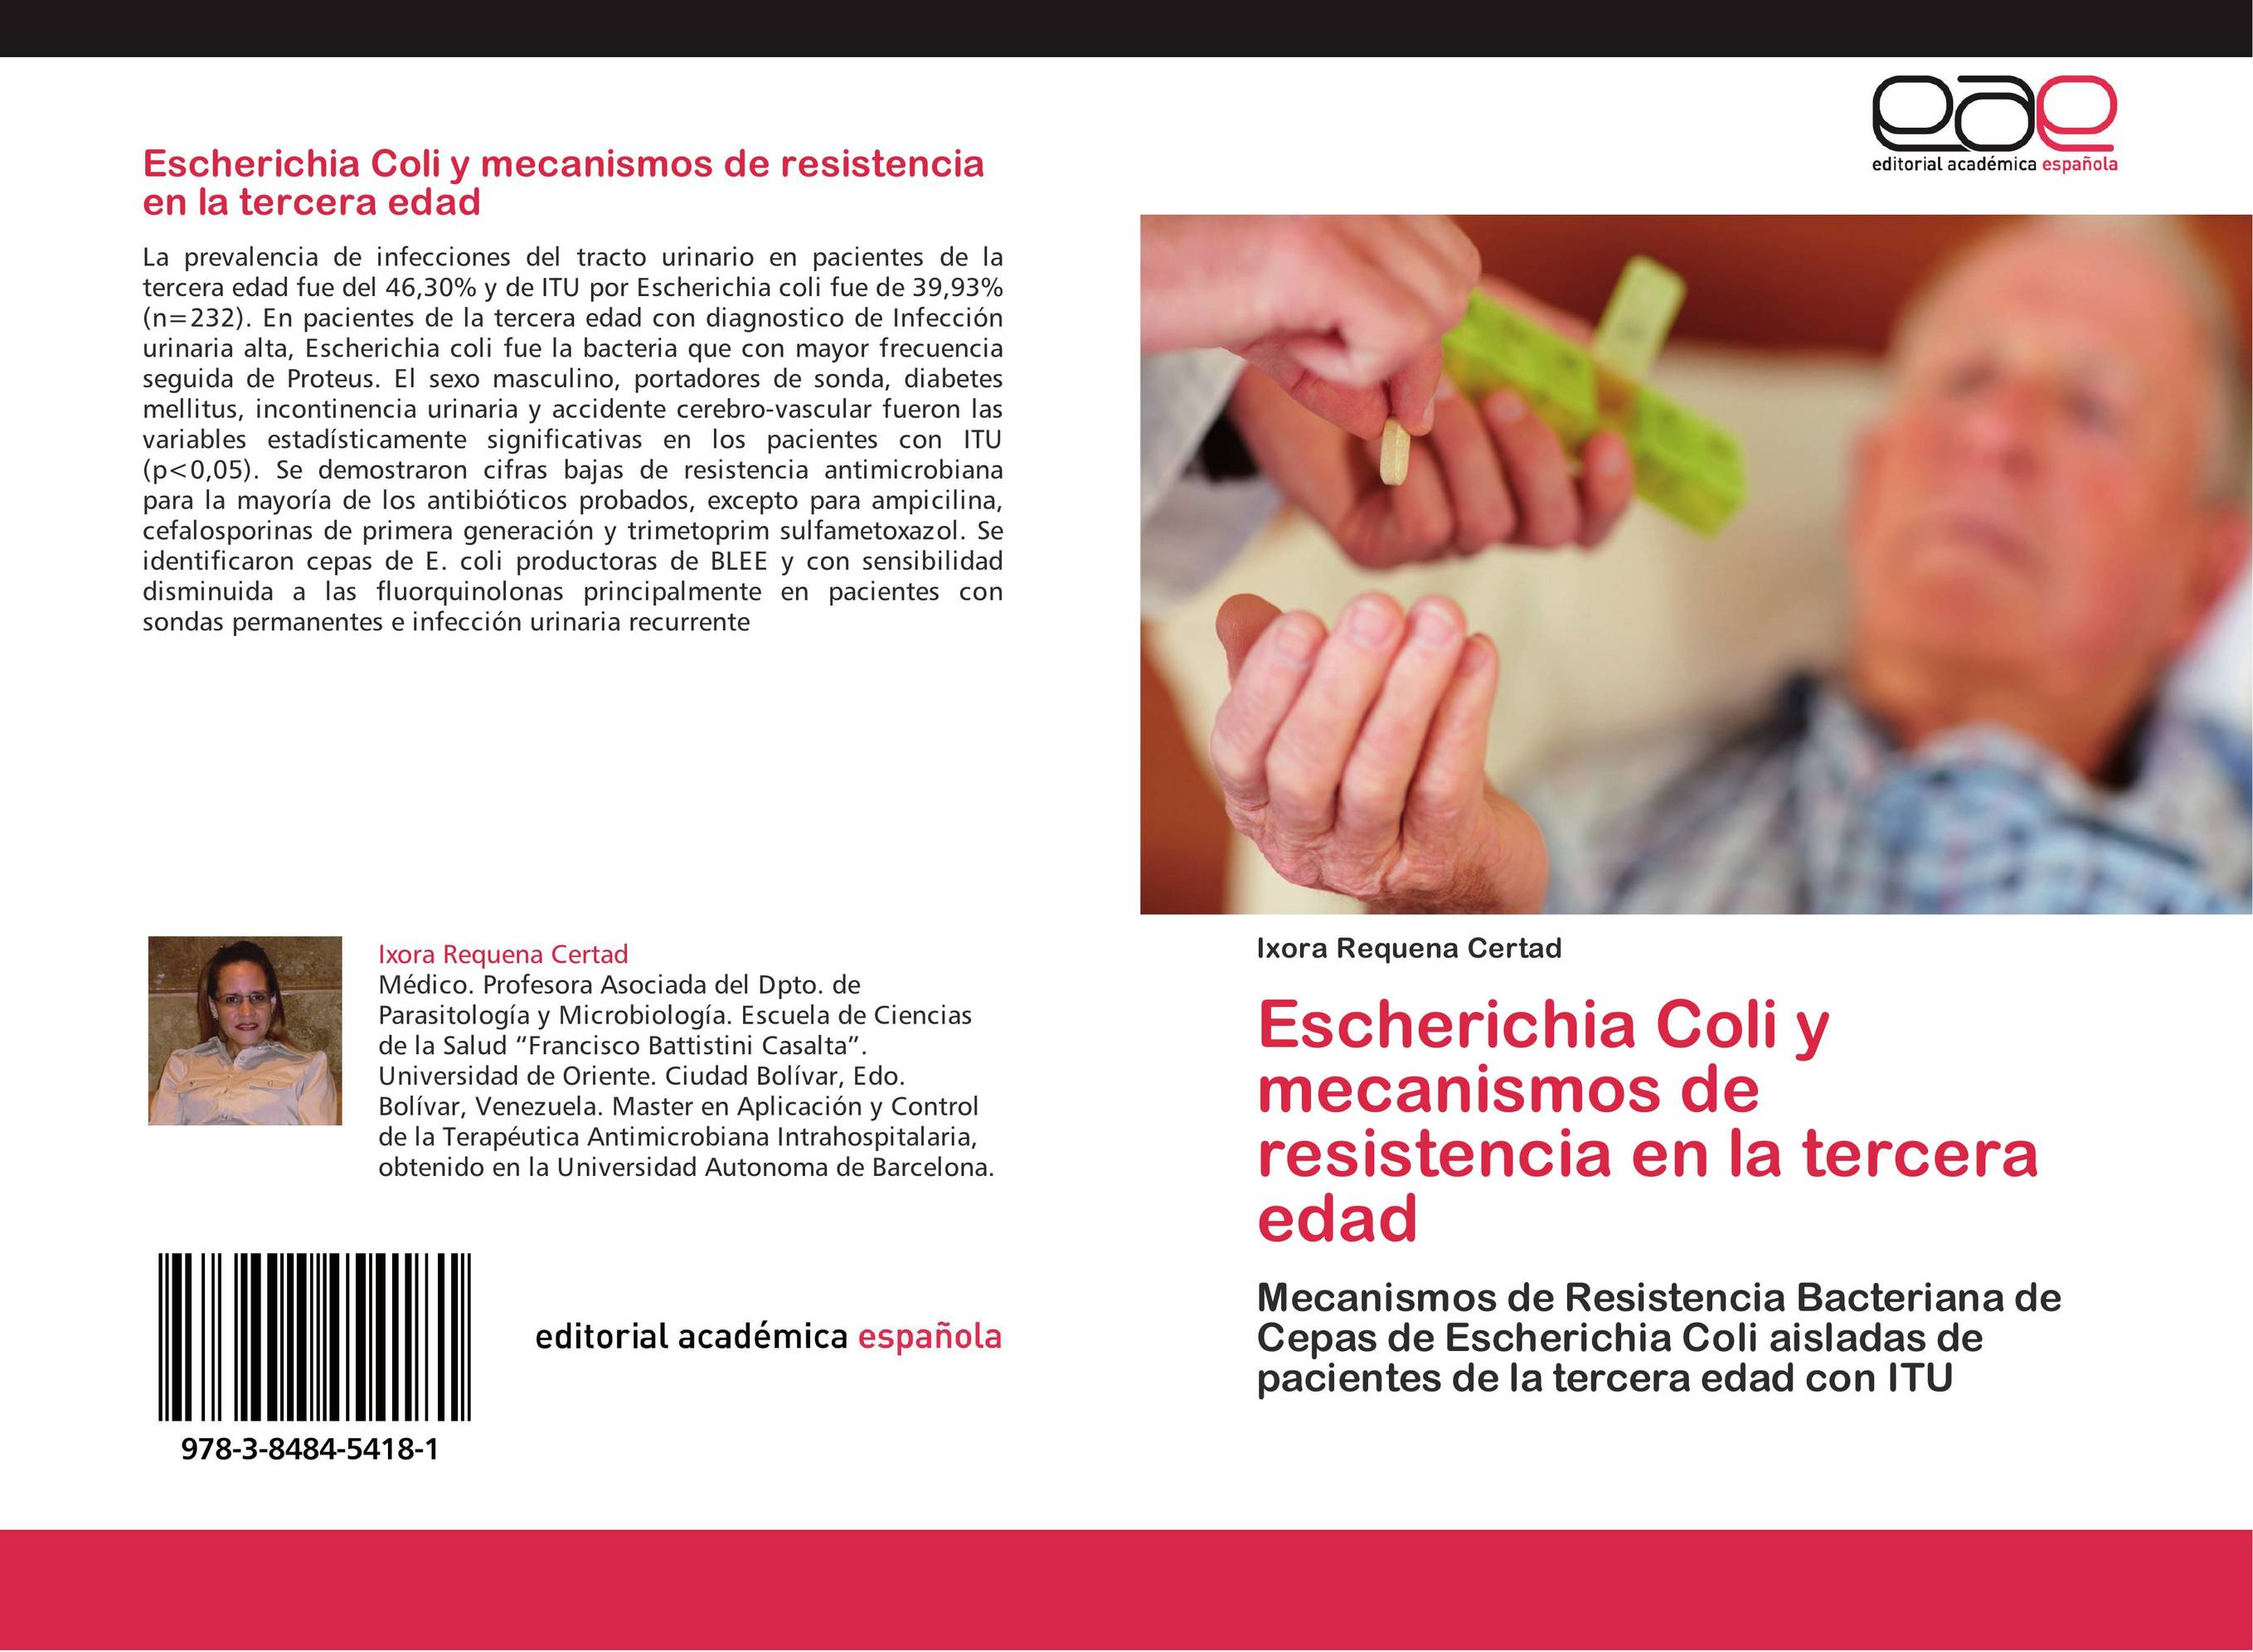 Escherichia Coli y mecanismos de resistencia en la tercera edad